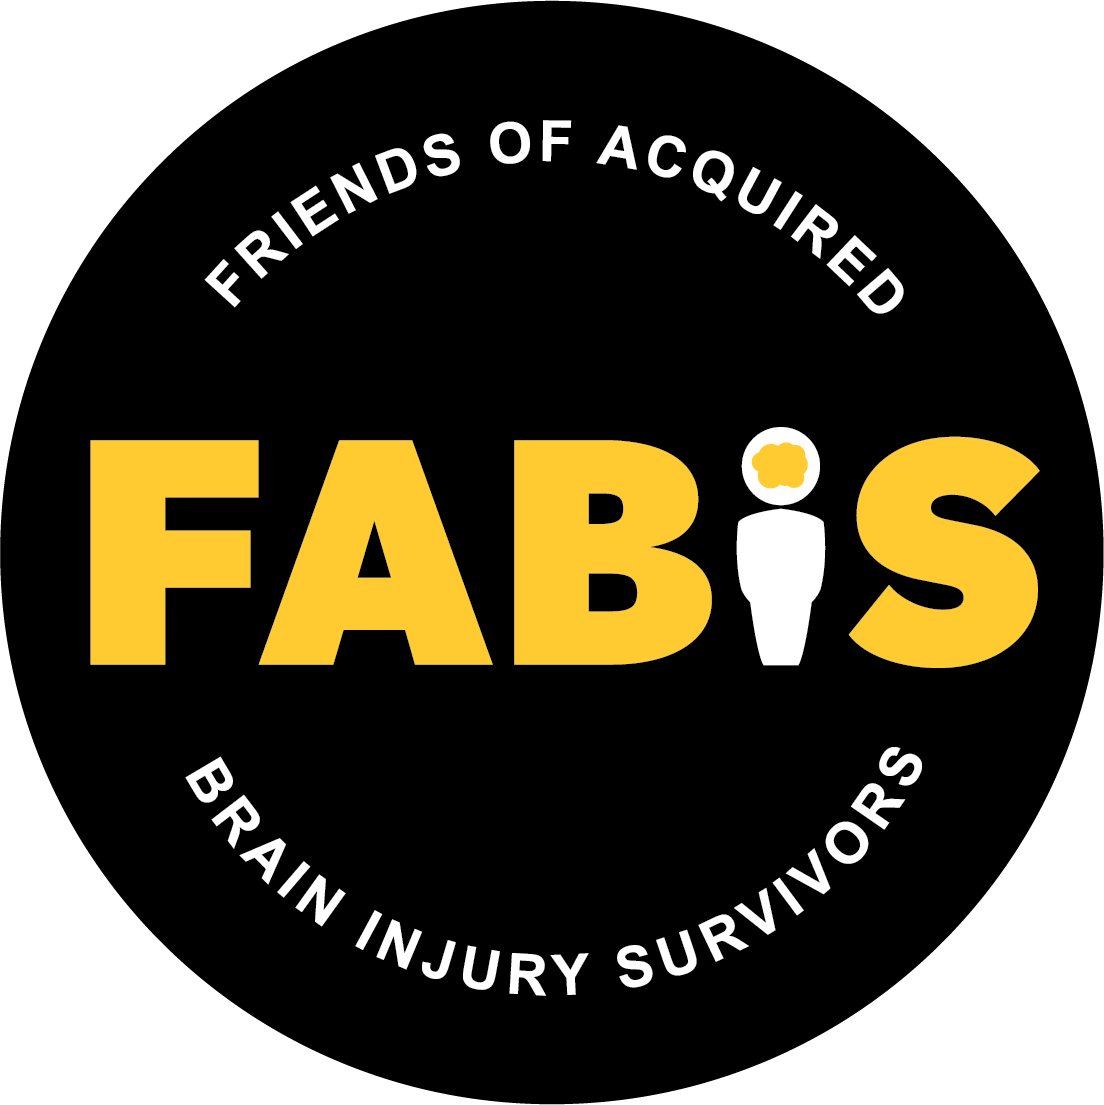 fabis main logo